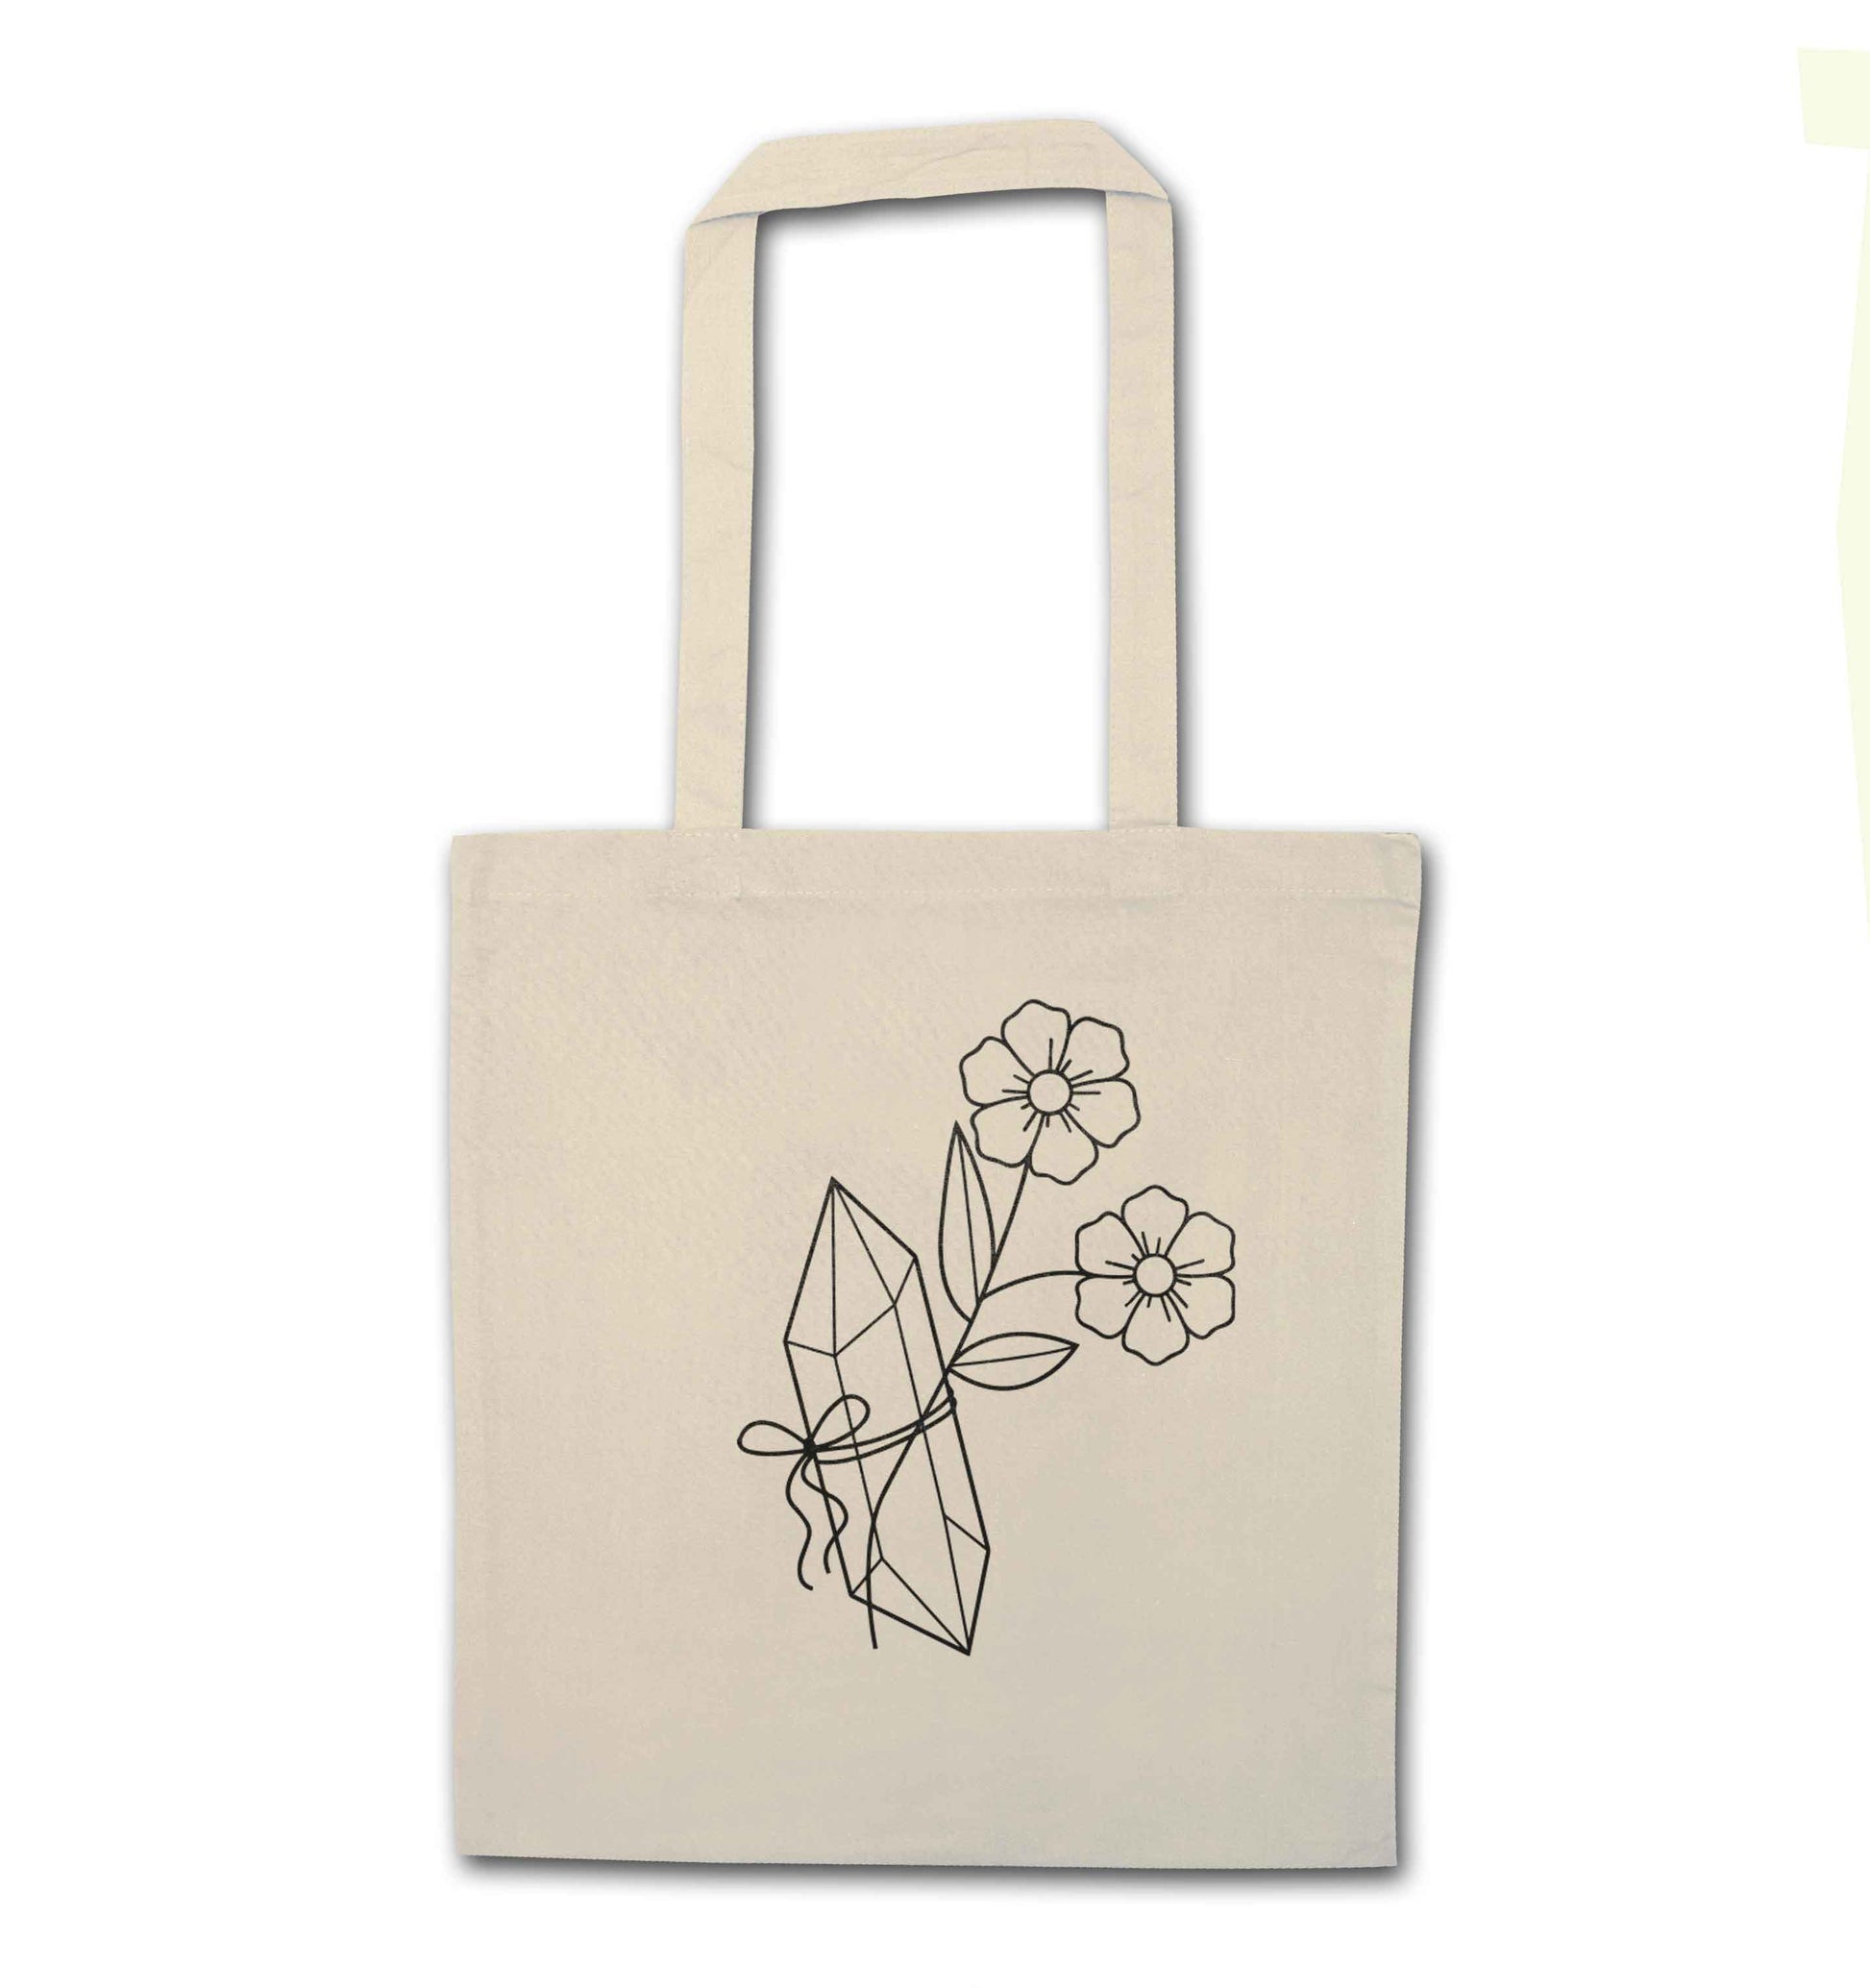 Crystal flower illustration natural tote bag